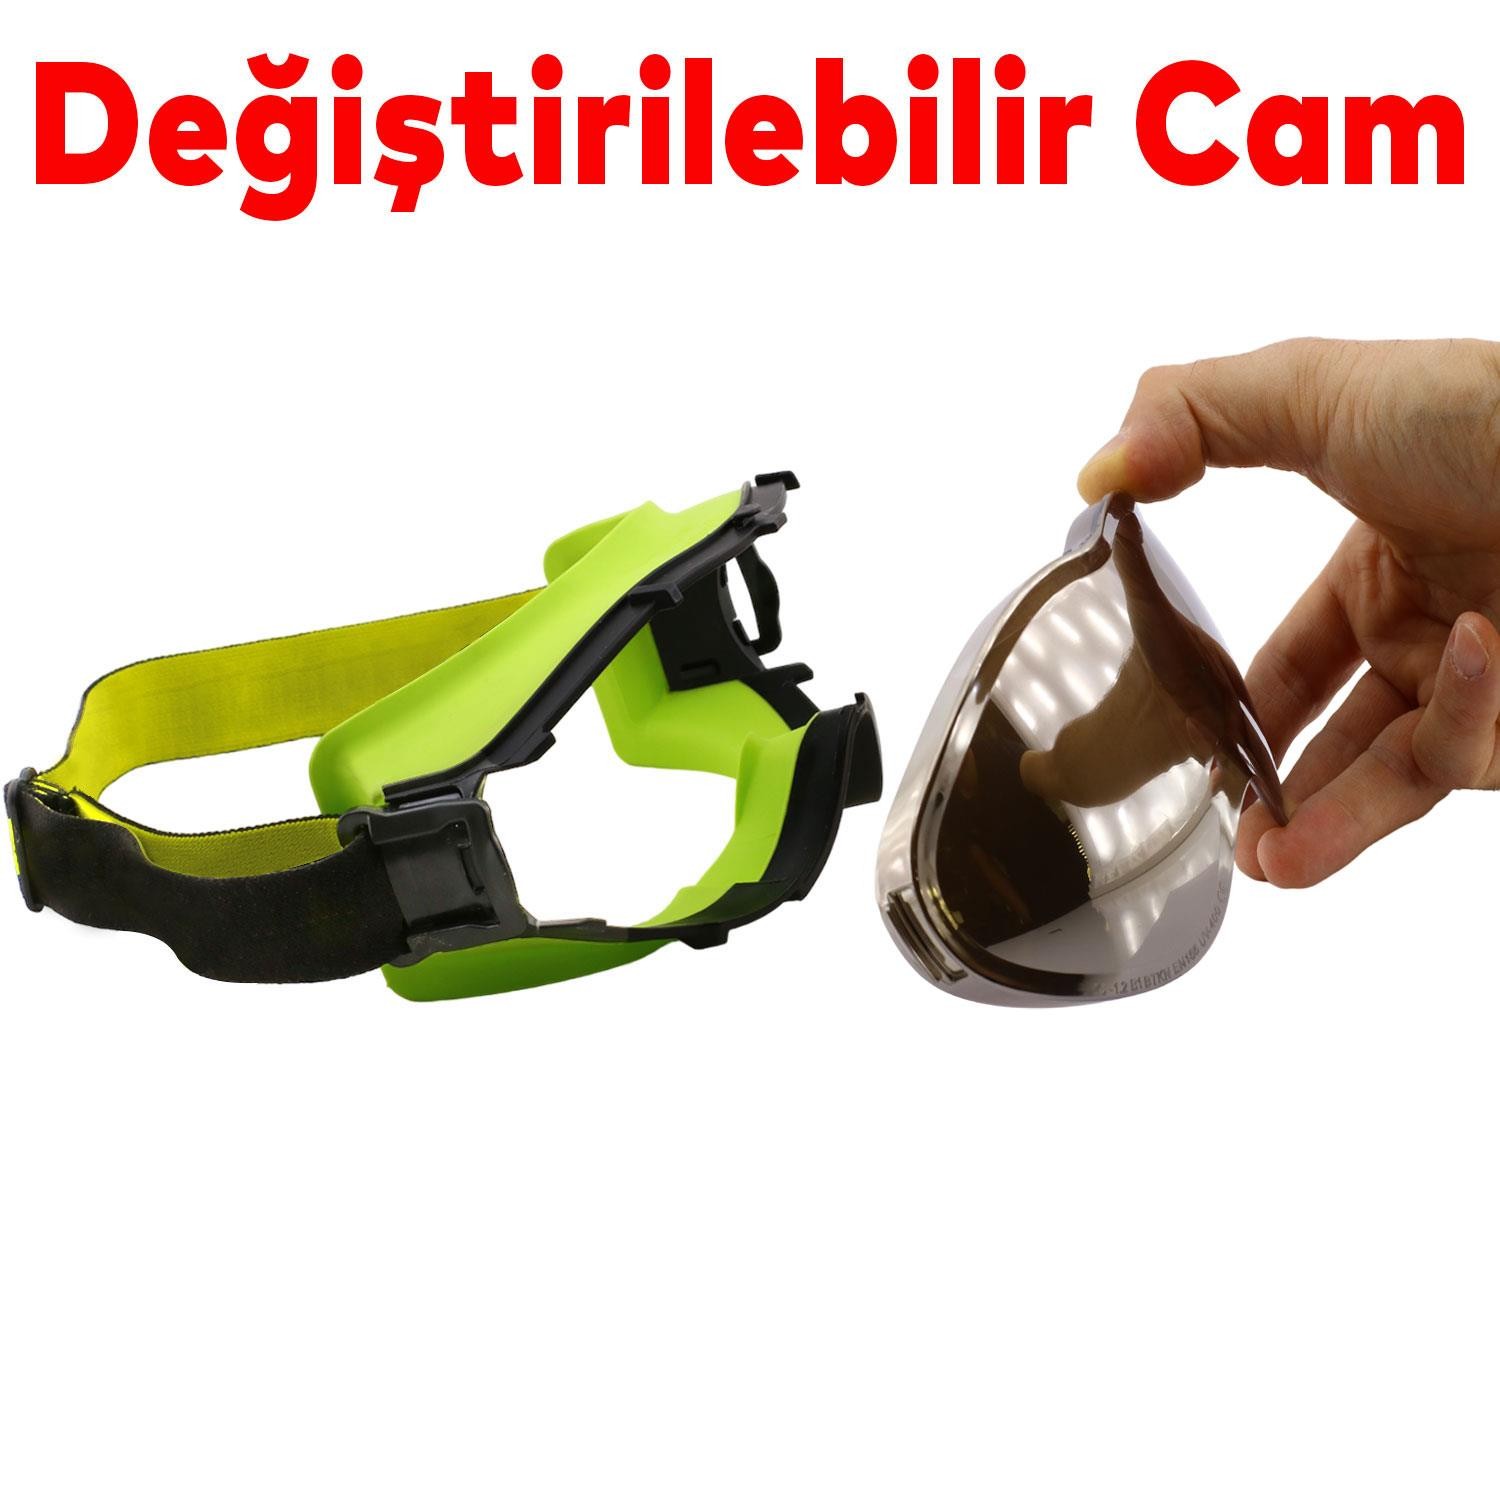 Bellasimo Kayak Gözlüğü Değiştirebilir Camlı Antifog Güneş Kar Gözlük Gümüş Snowboard Glasses Gözlük+1 Adet Yedek Cam (Füme)